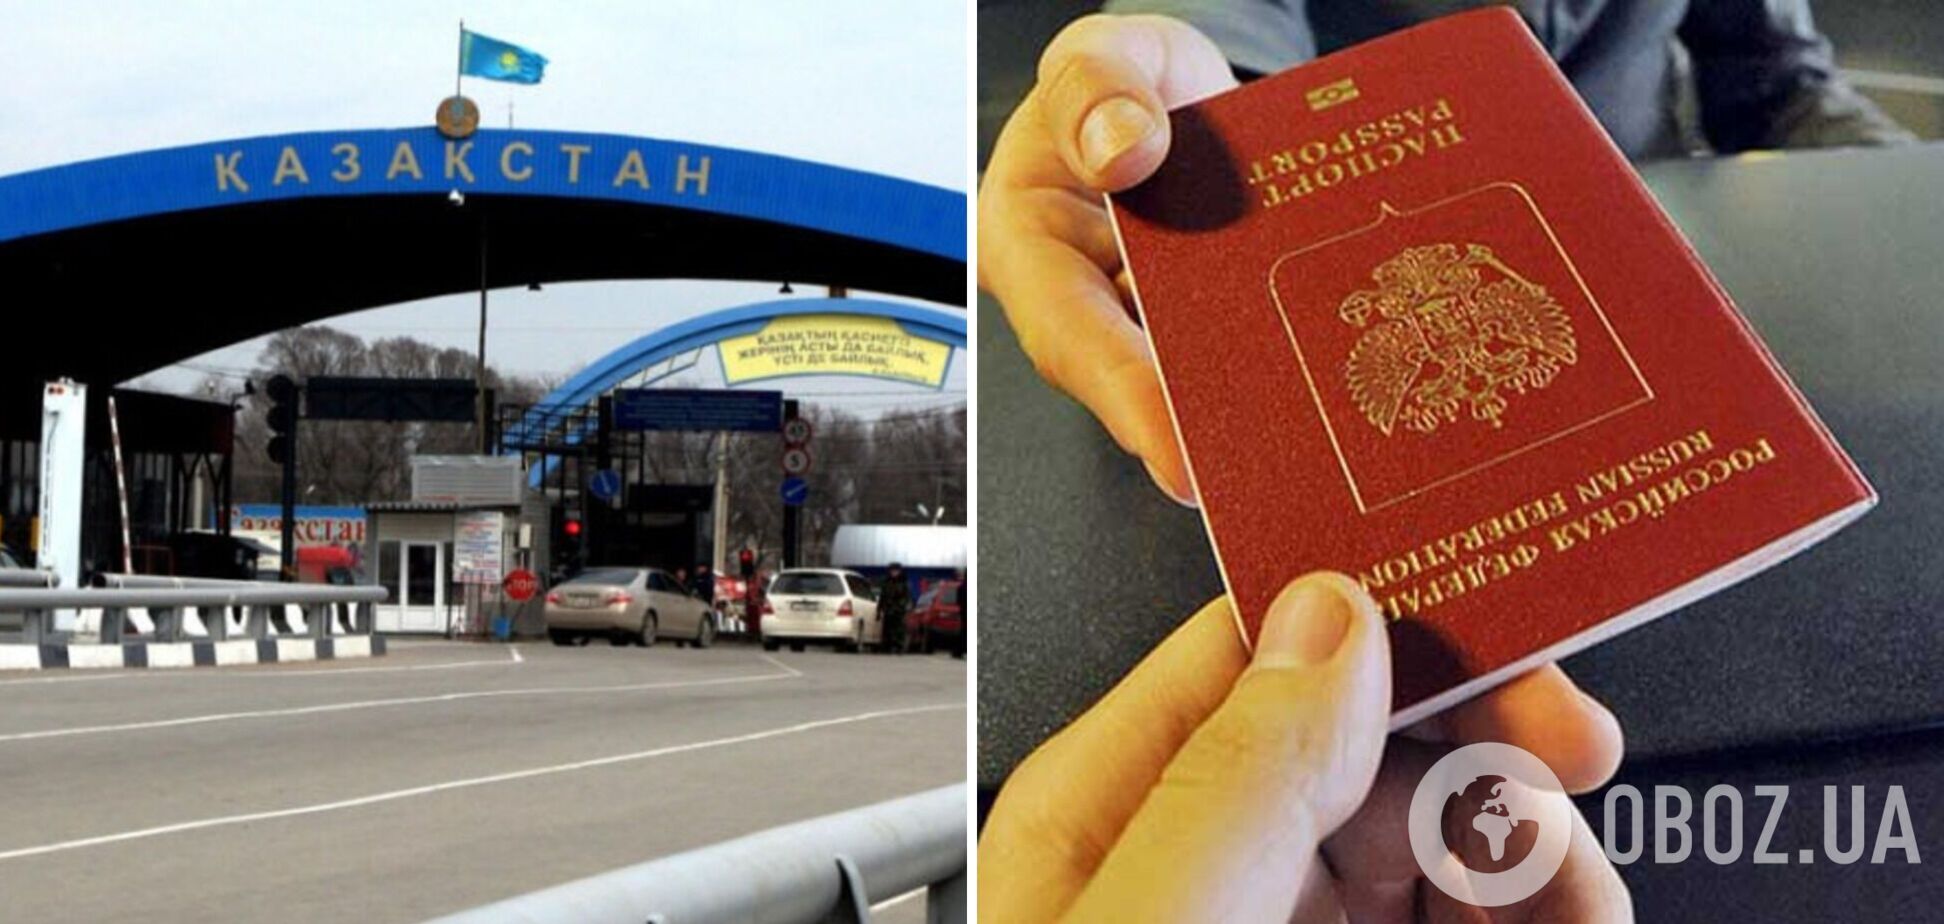 Казахстан потребует от россиян загранпаспорта